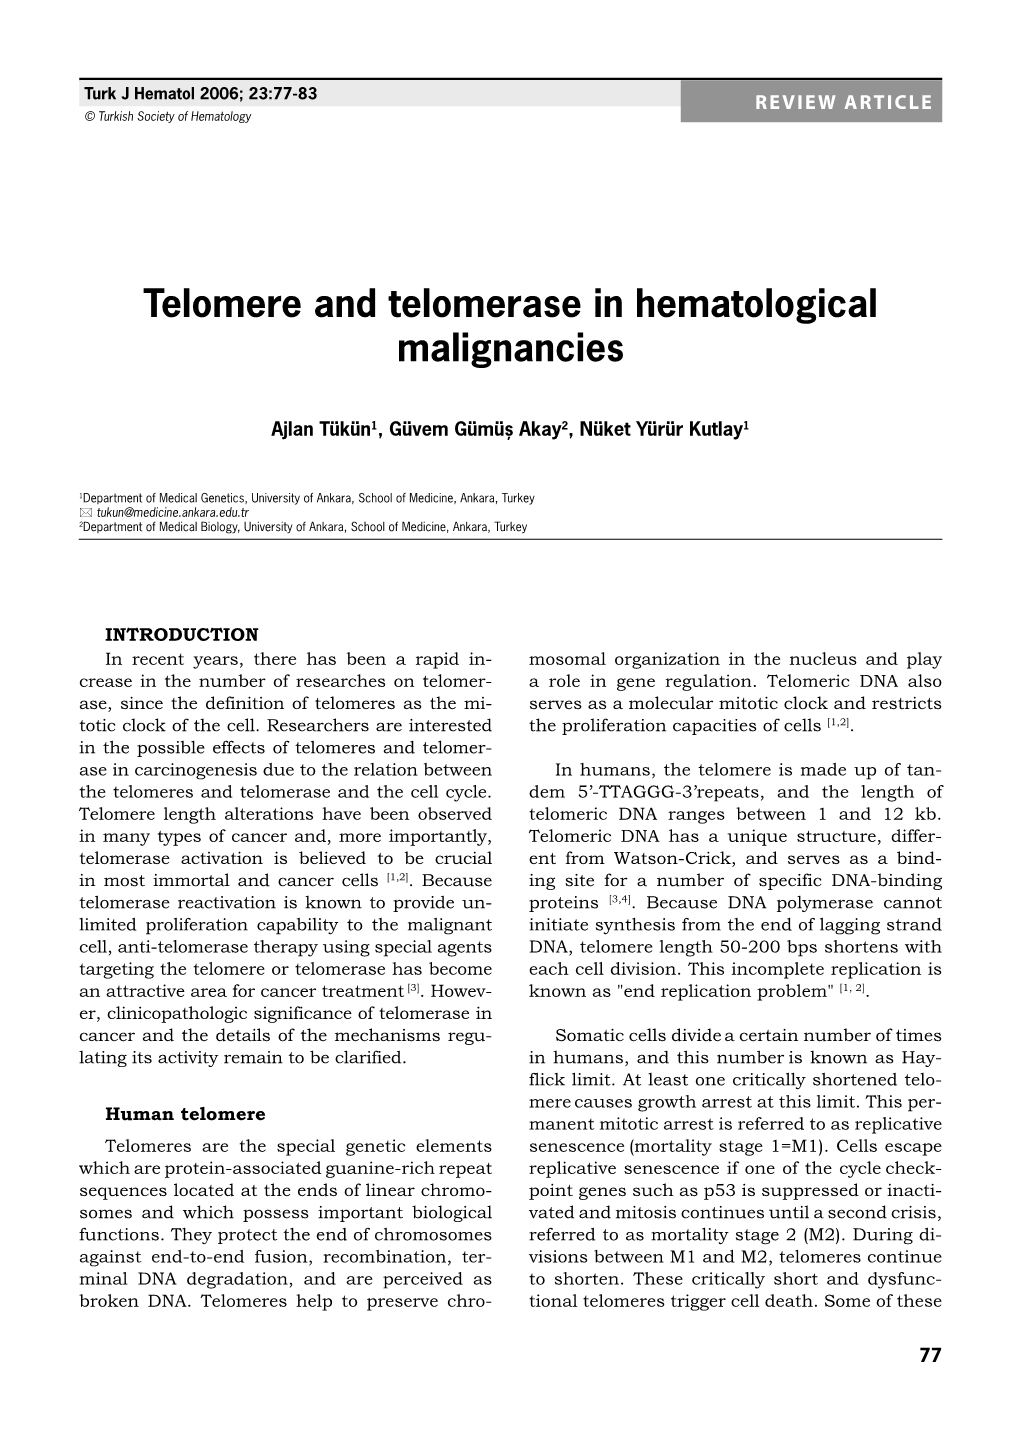 Telomere and Telomerase in Hematological Malignancies